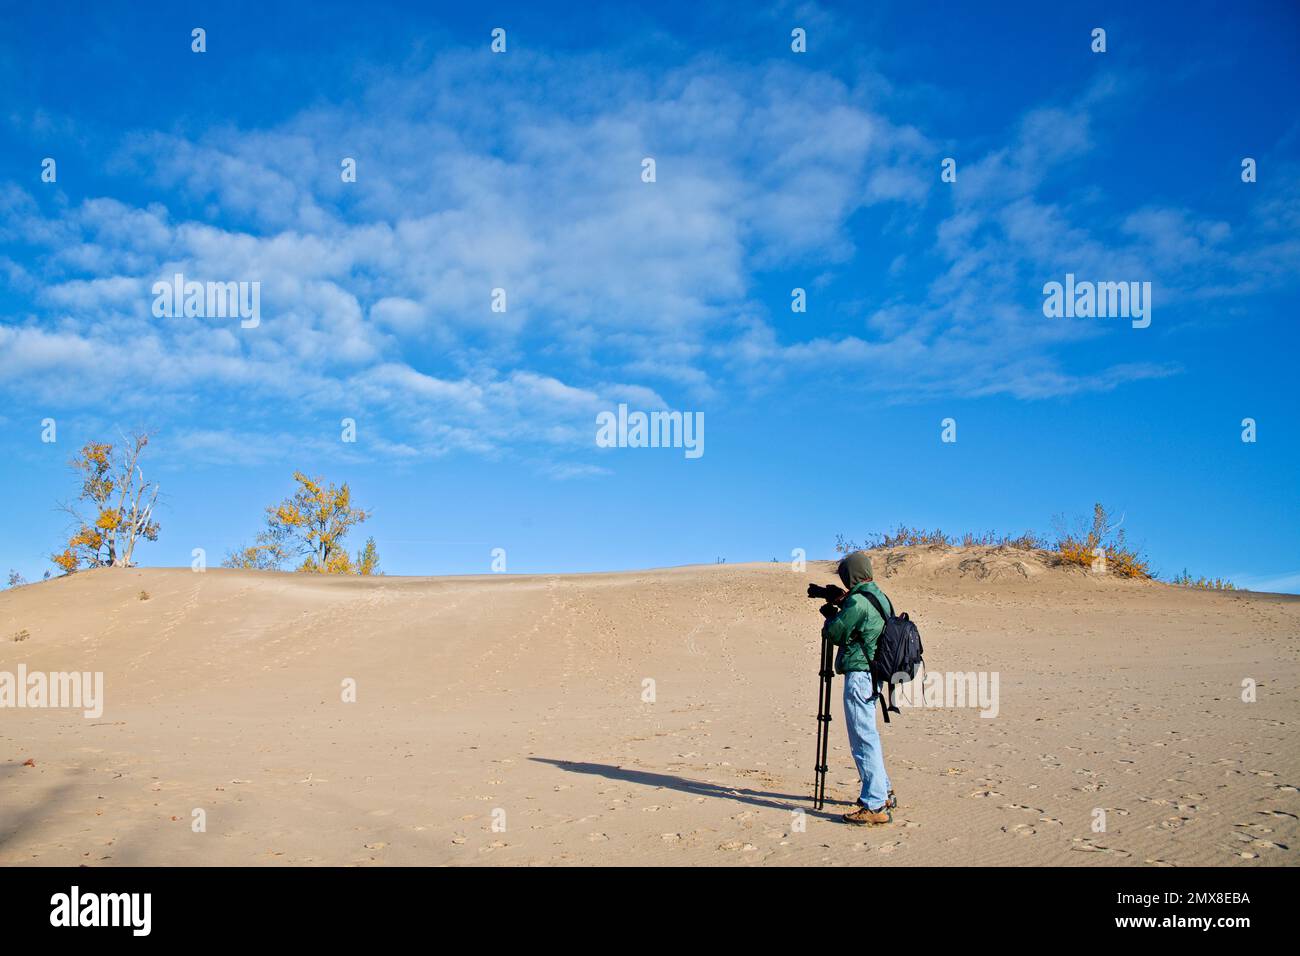 Ein männlicher Fotograf, der Fotos auf der Sanddüne mit blauem Himmel und Herbstblattfarbe macht Stockfoto